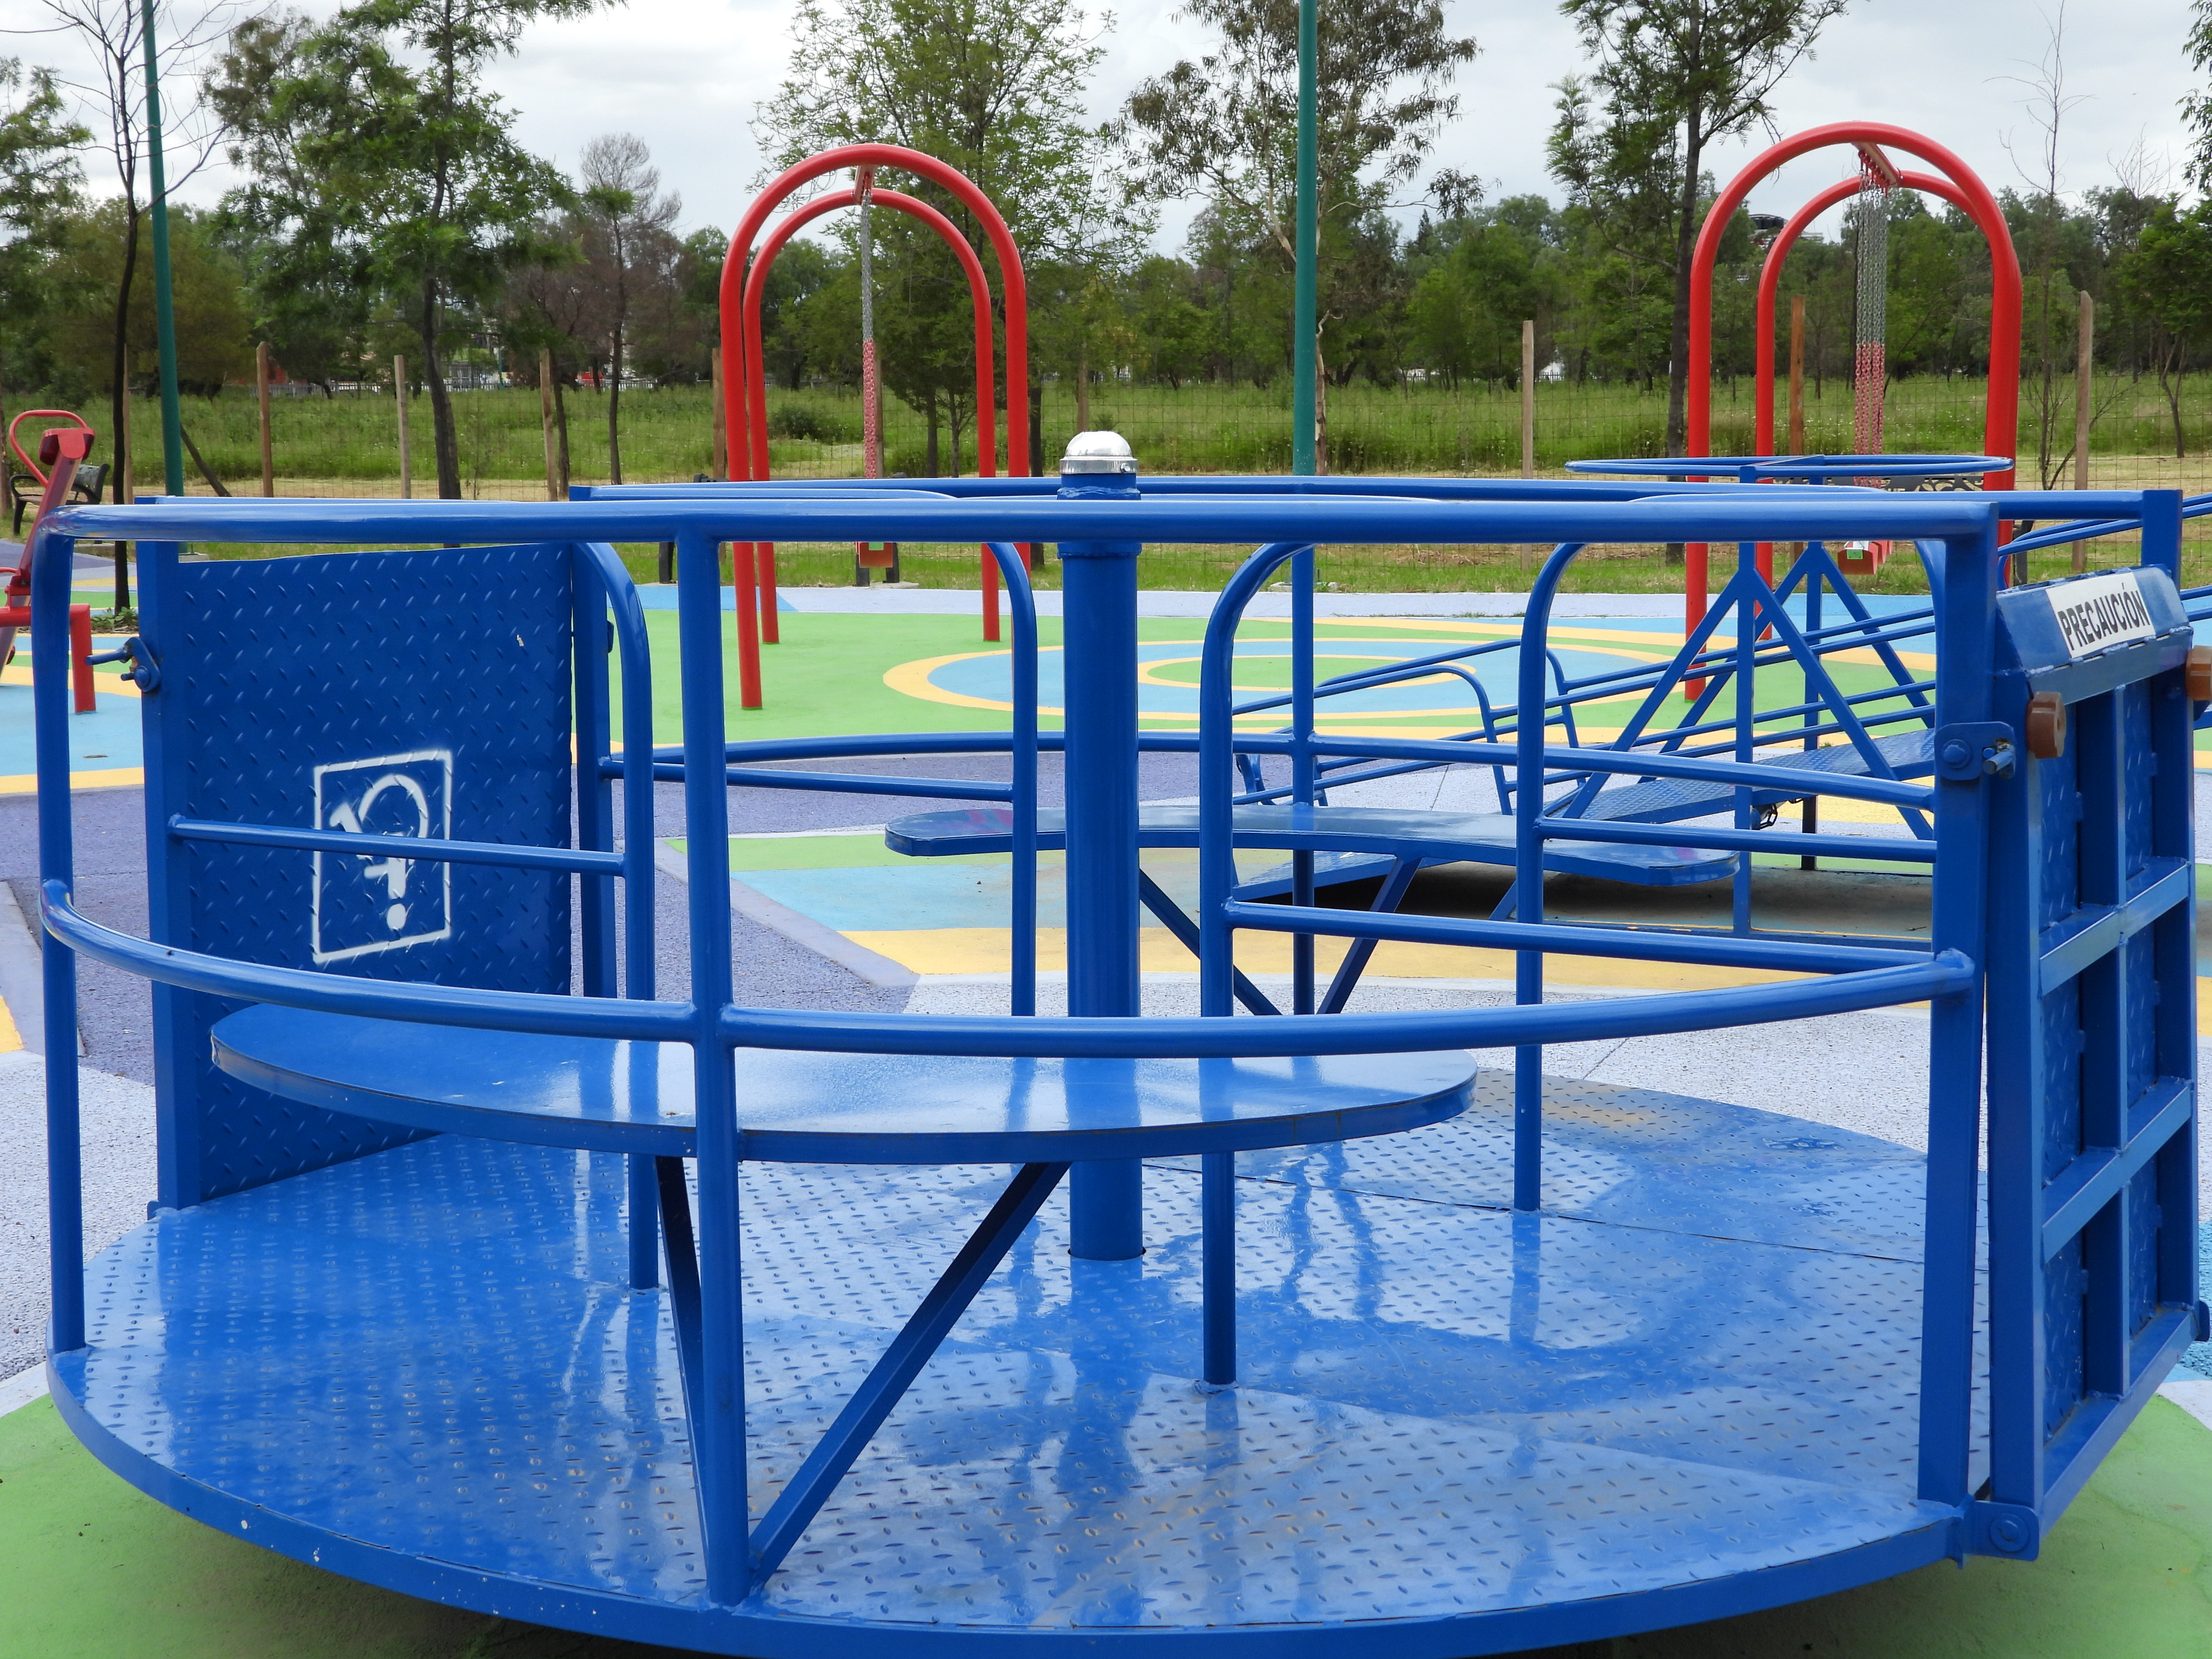 Parques para niños en CDMX con área de juegos